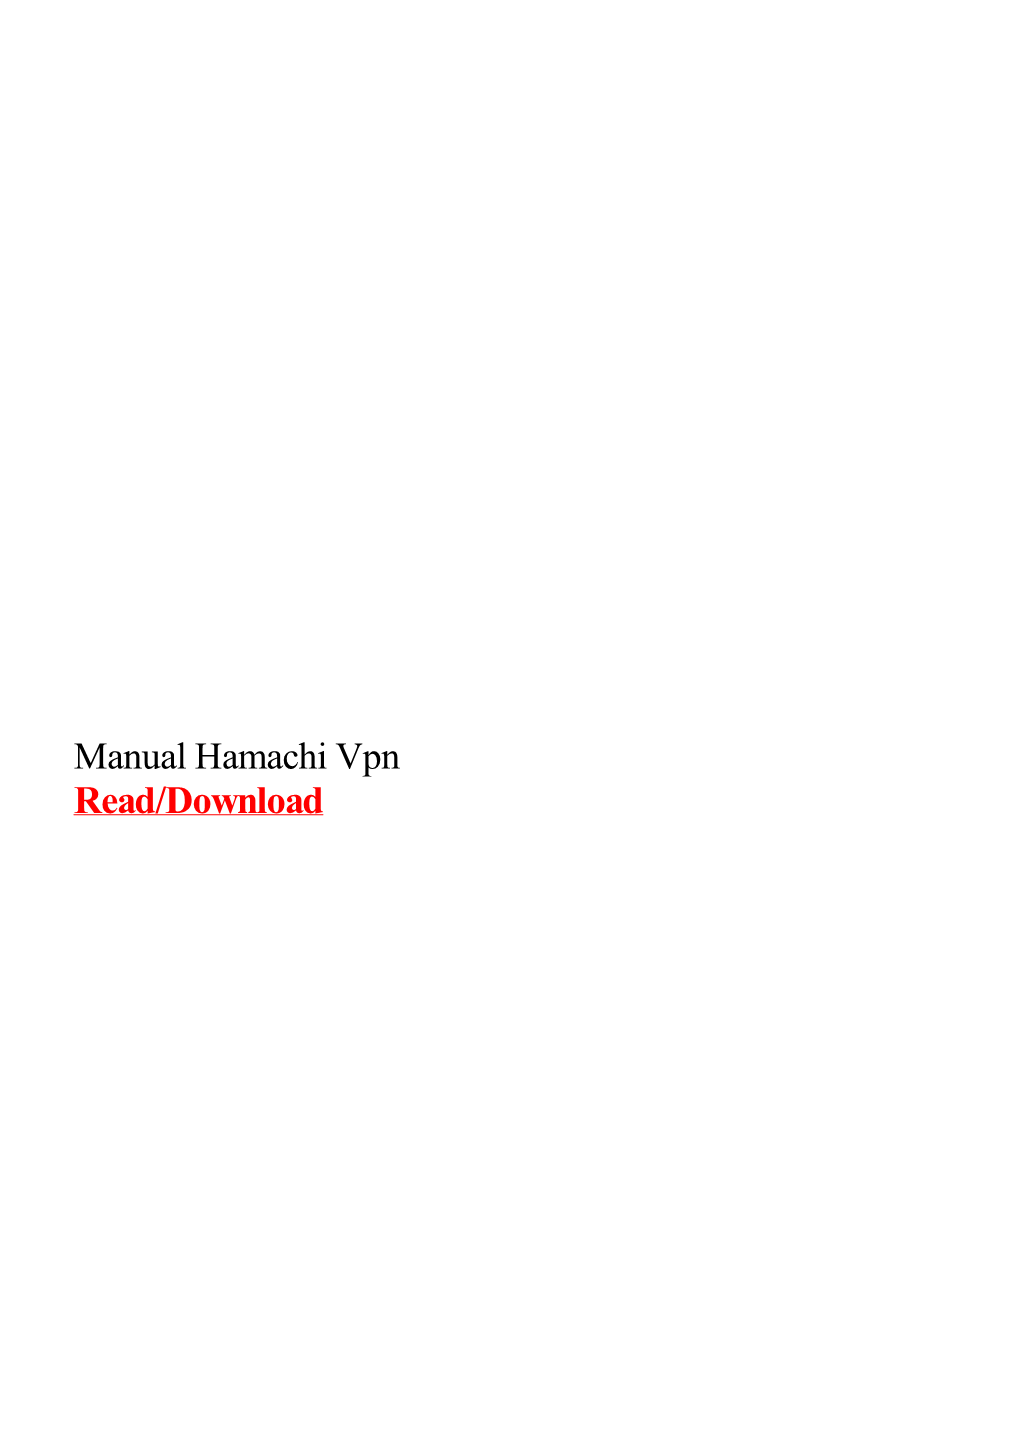 Manual Hamachi Vpn